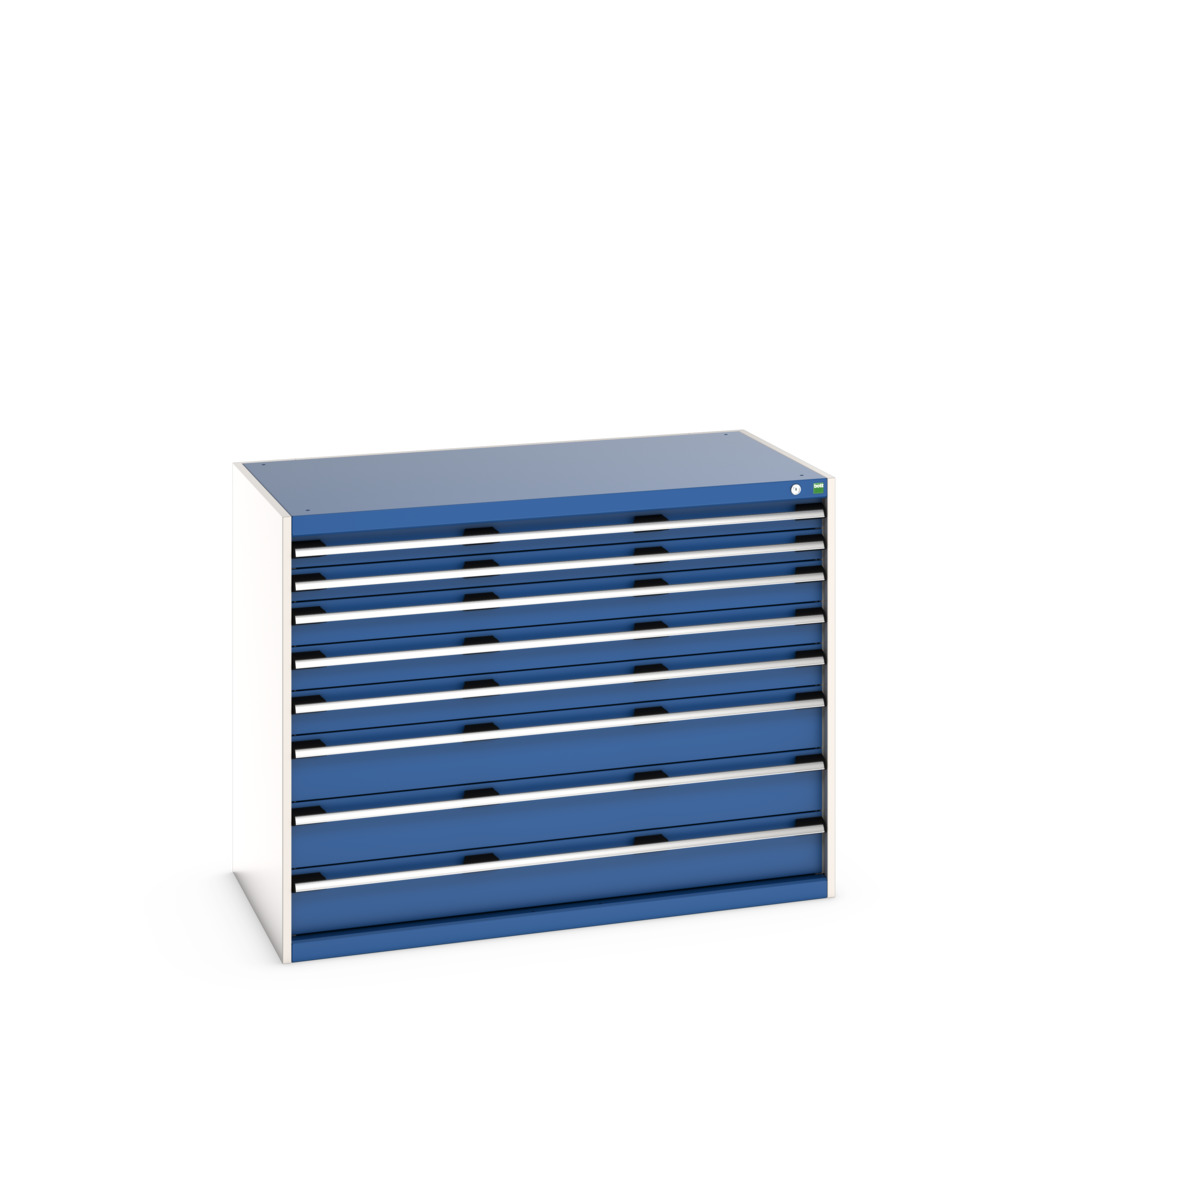 40030019.11V - cubio drawer cabinet